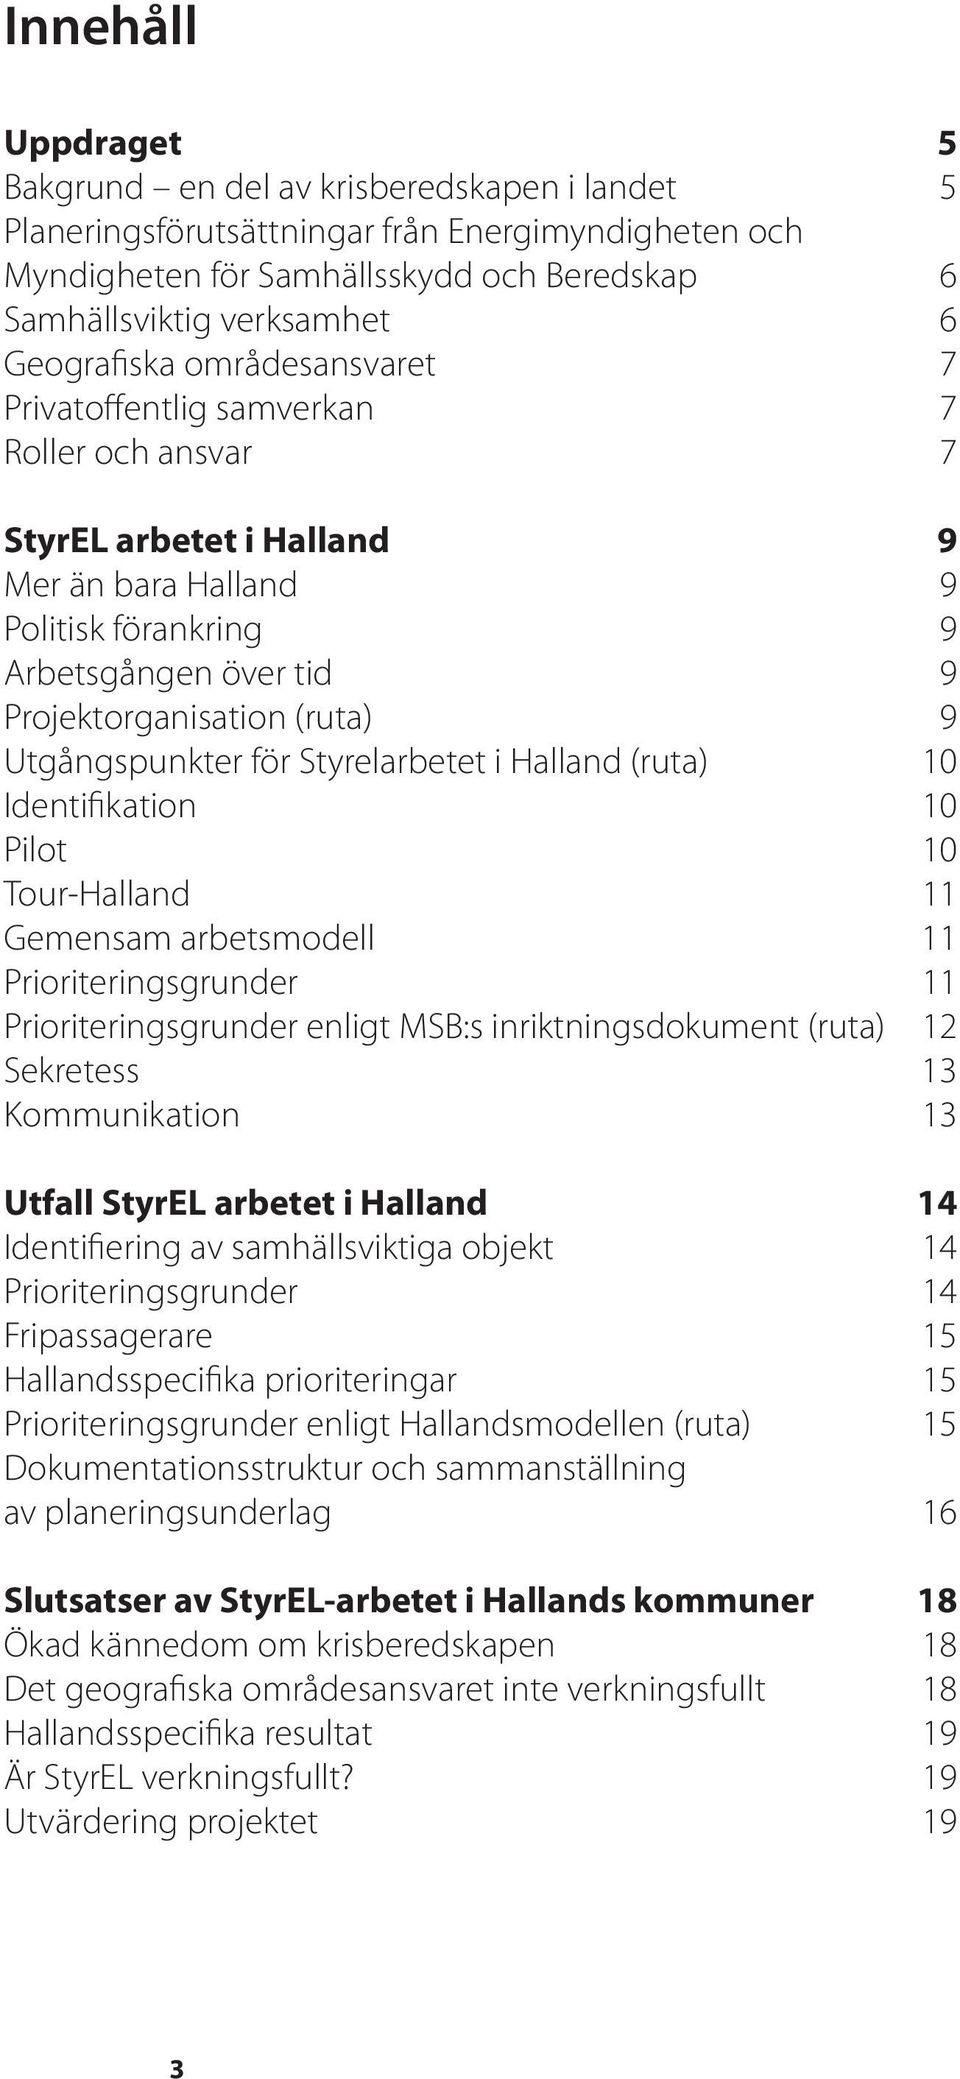 9 Utgångspunkter för Styrelarbetet i Halland (ruta) 10 Identifikation 10 Pilot 10 Tour-Halland 11 Gemensam arbetsmodell 11 Prioriteringsgrunder 11 Prioriteringsgrunder enligt MSB:s